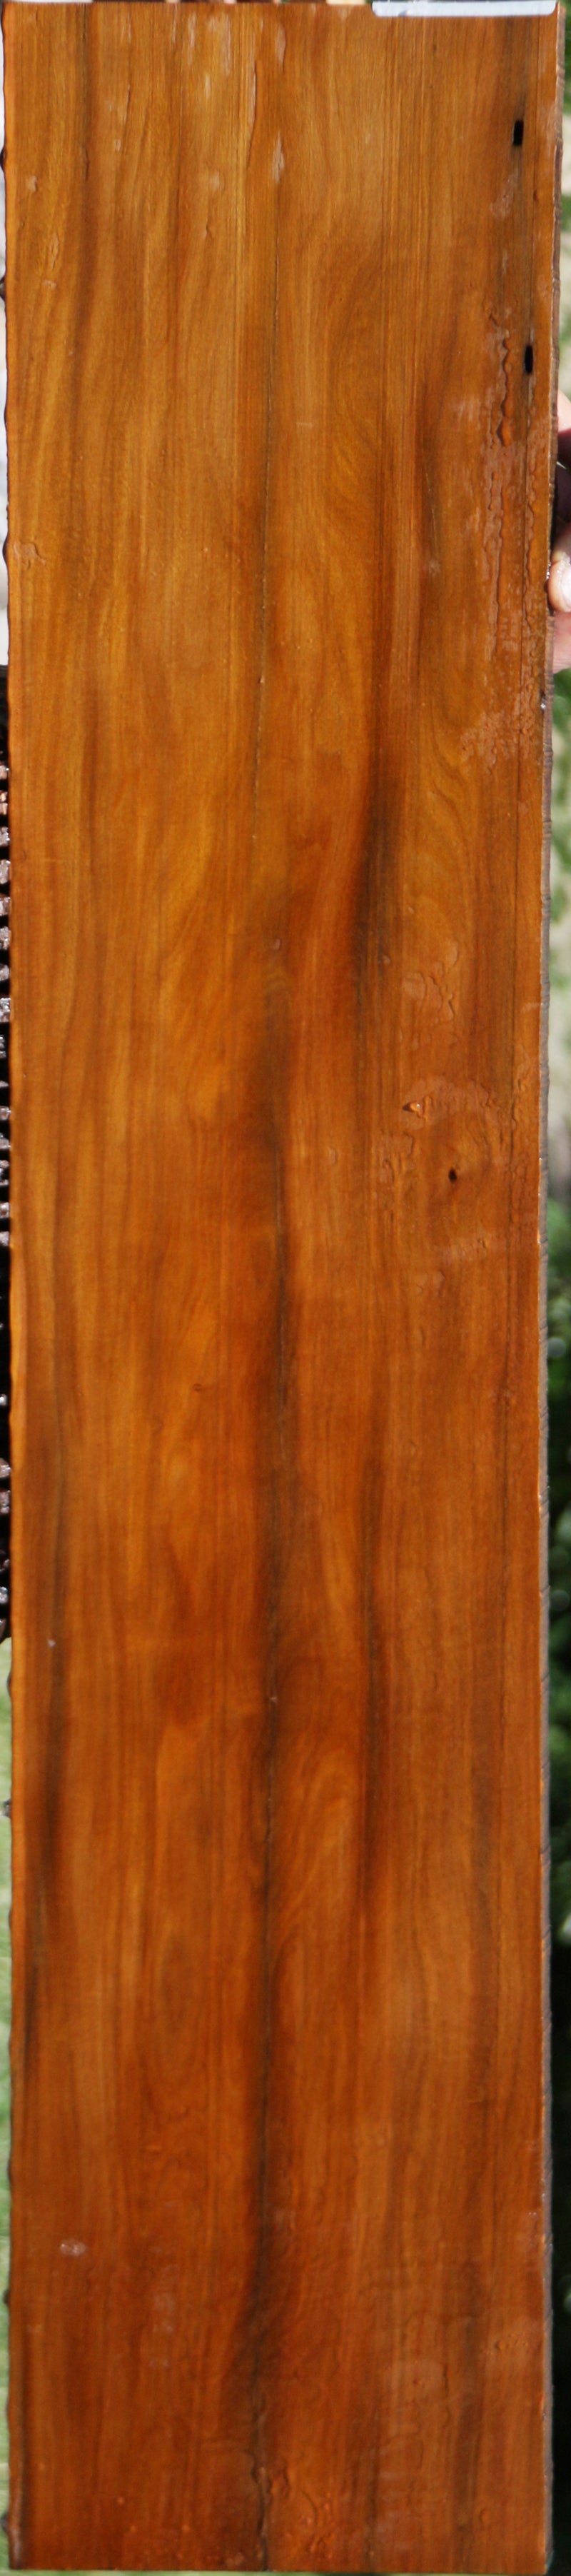 Rustic Pernambuco Micro Lumber